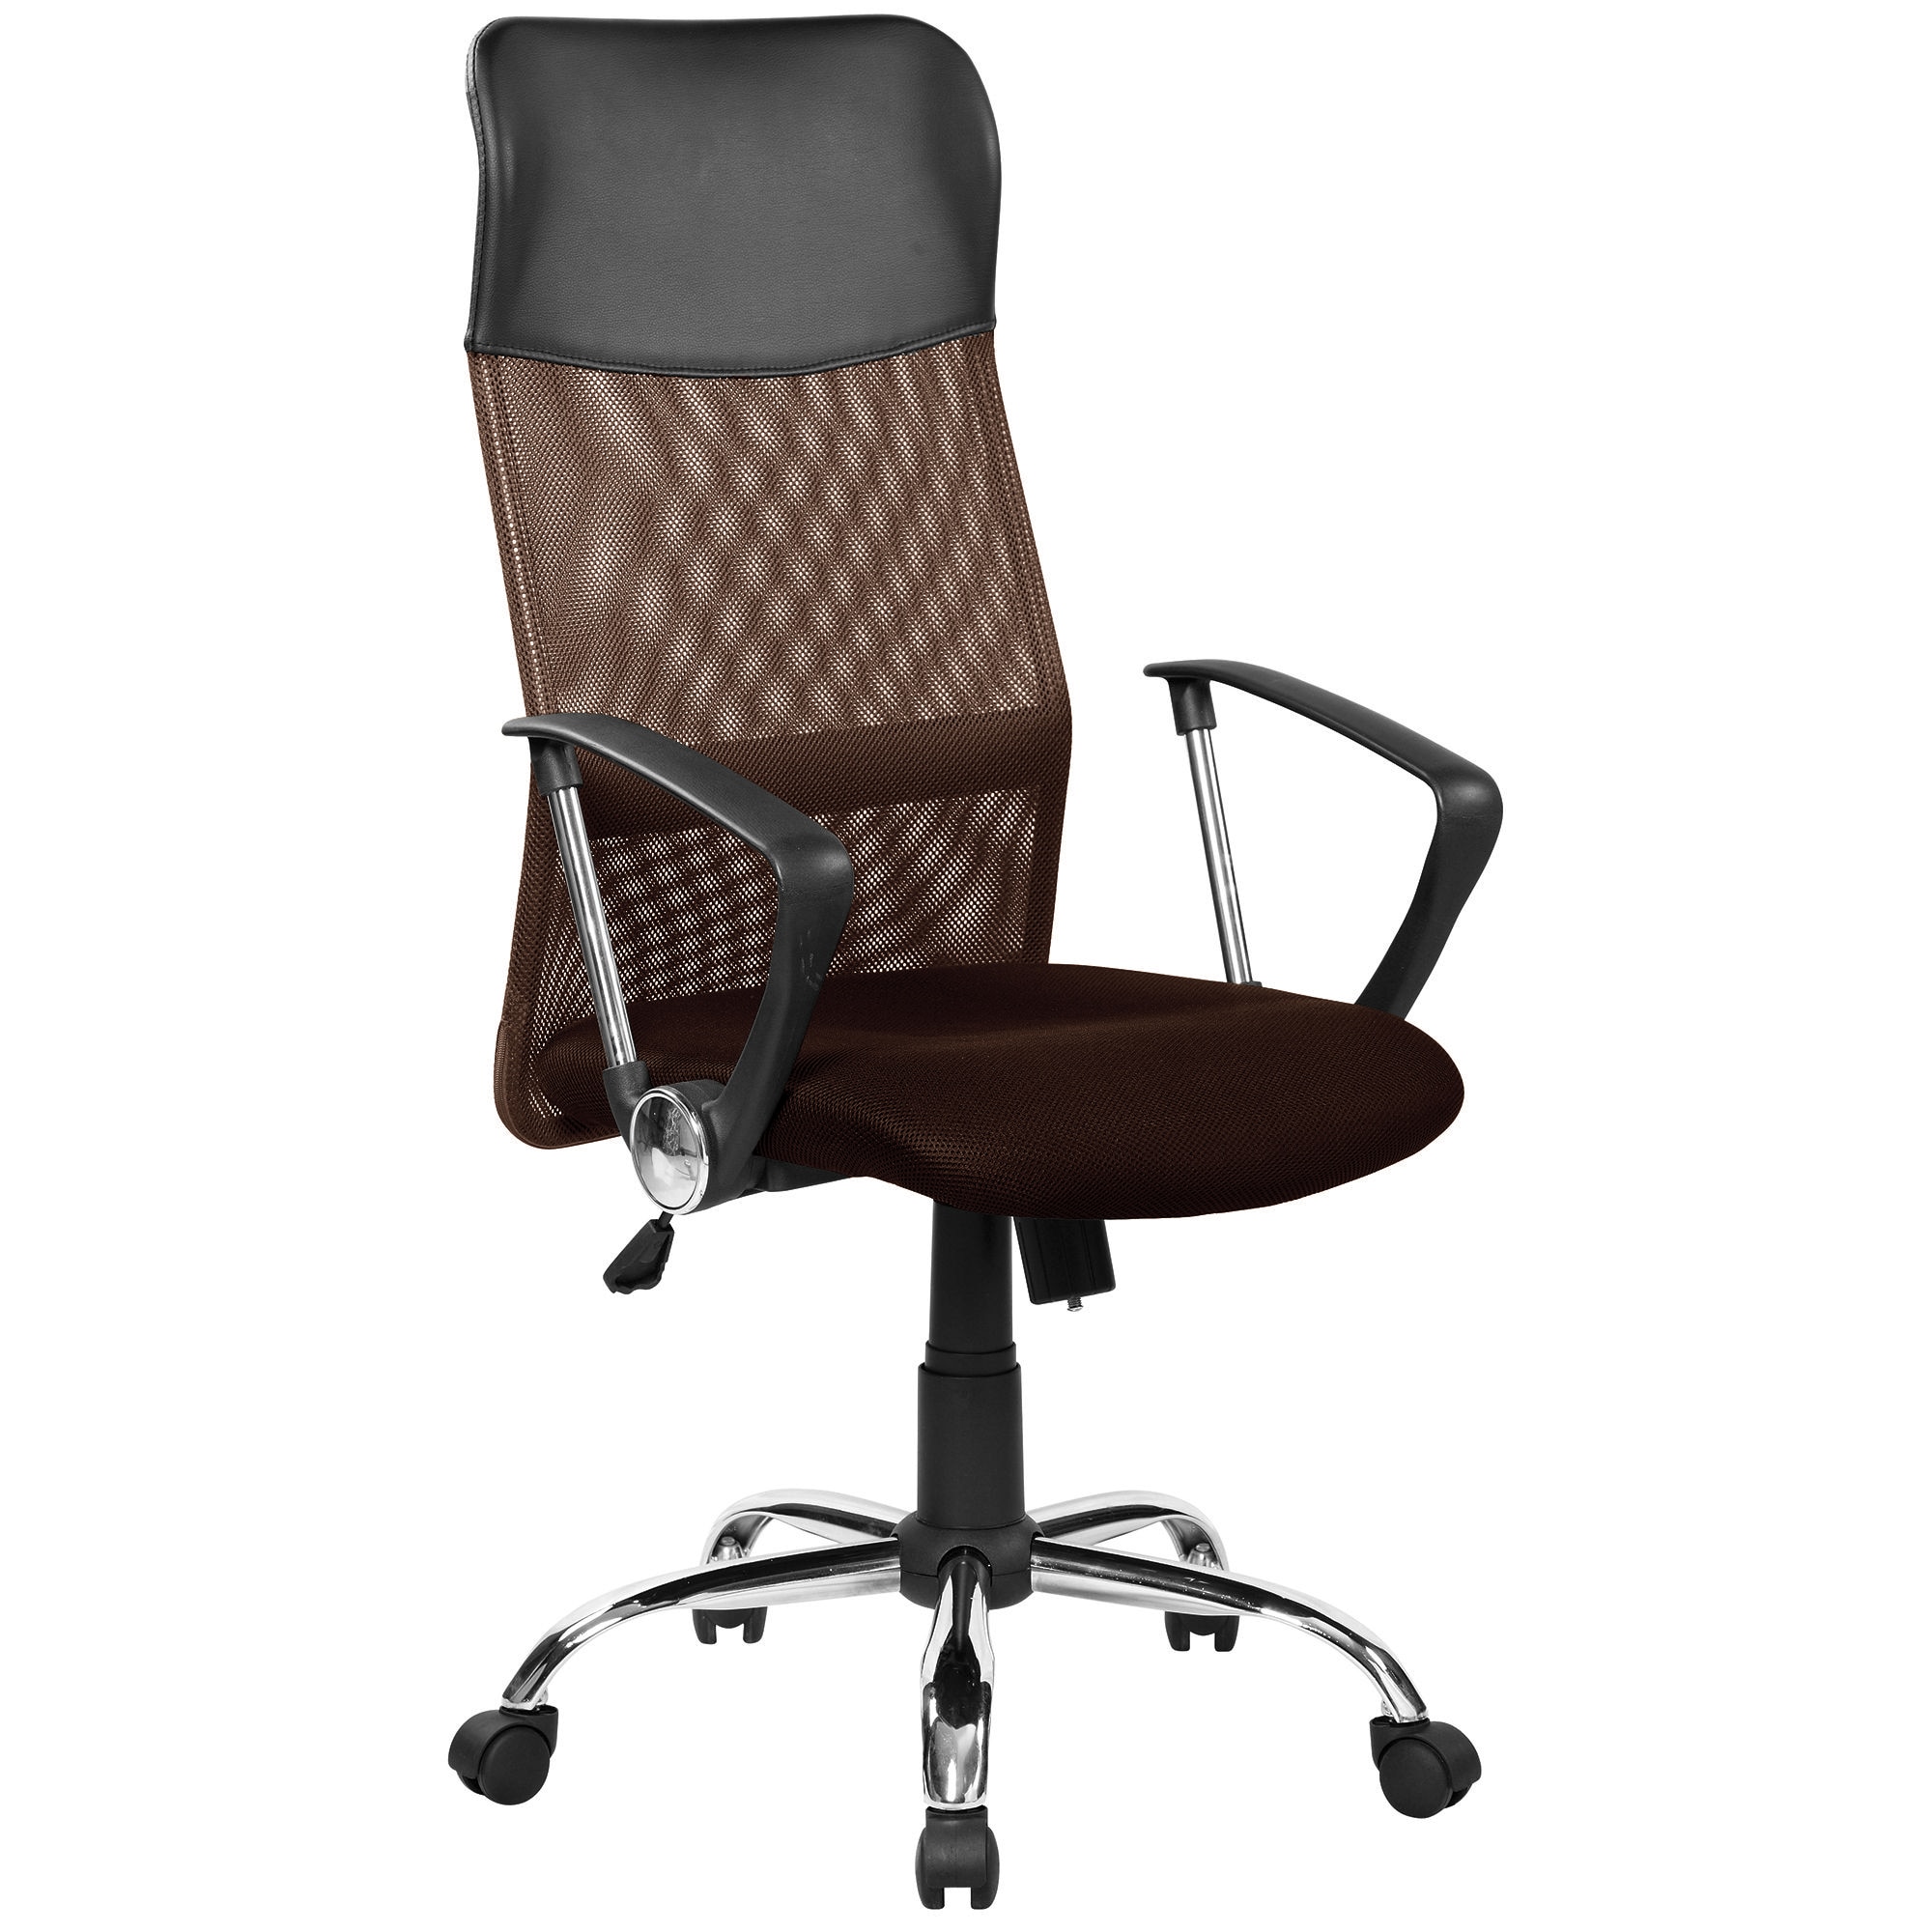 Кресло офисное спинка сетка. Кресло руководителя FX-139. Кресло direct 3012h. Кресло офисное с  стандарт BIFMA 5,1.